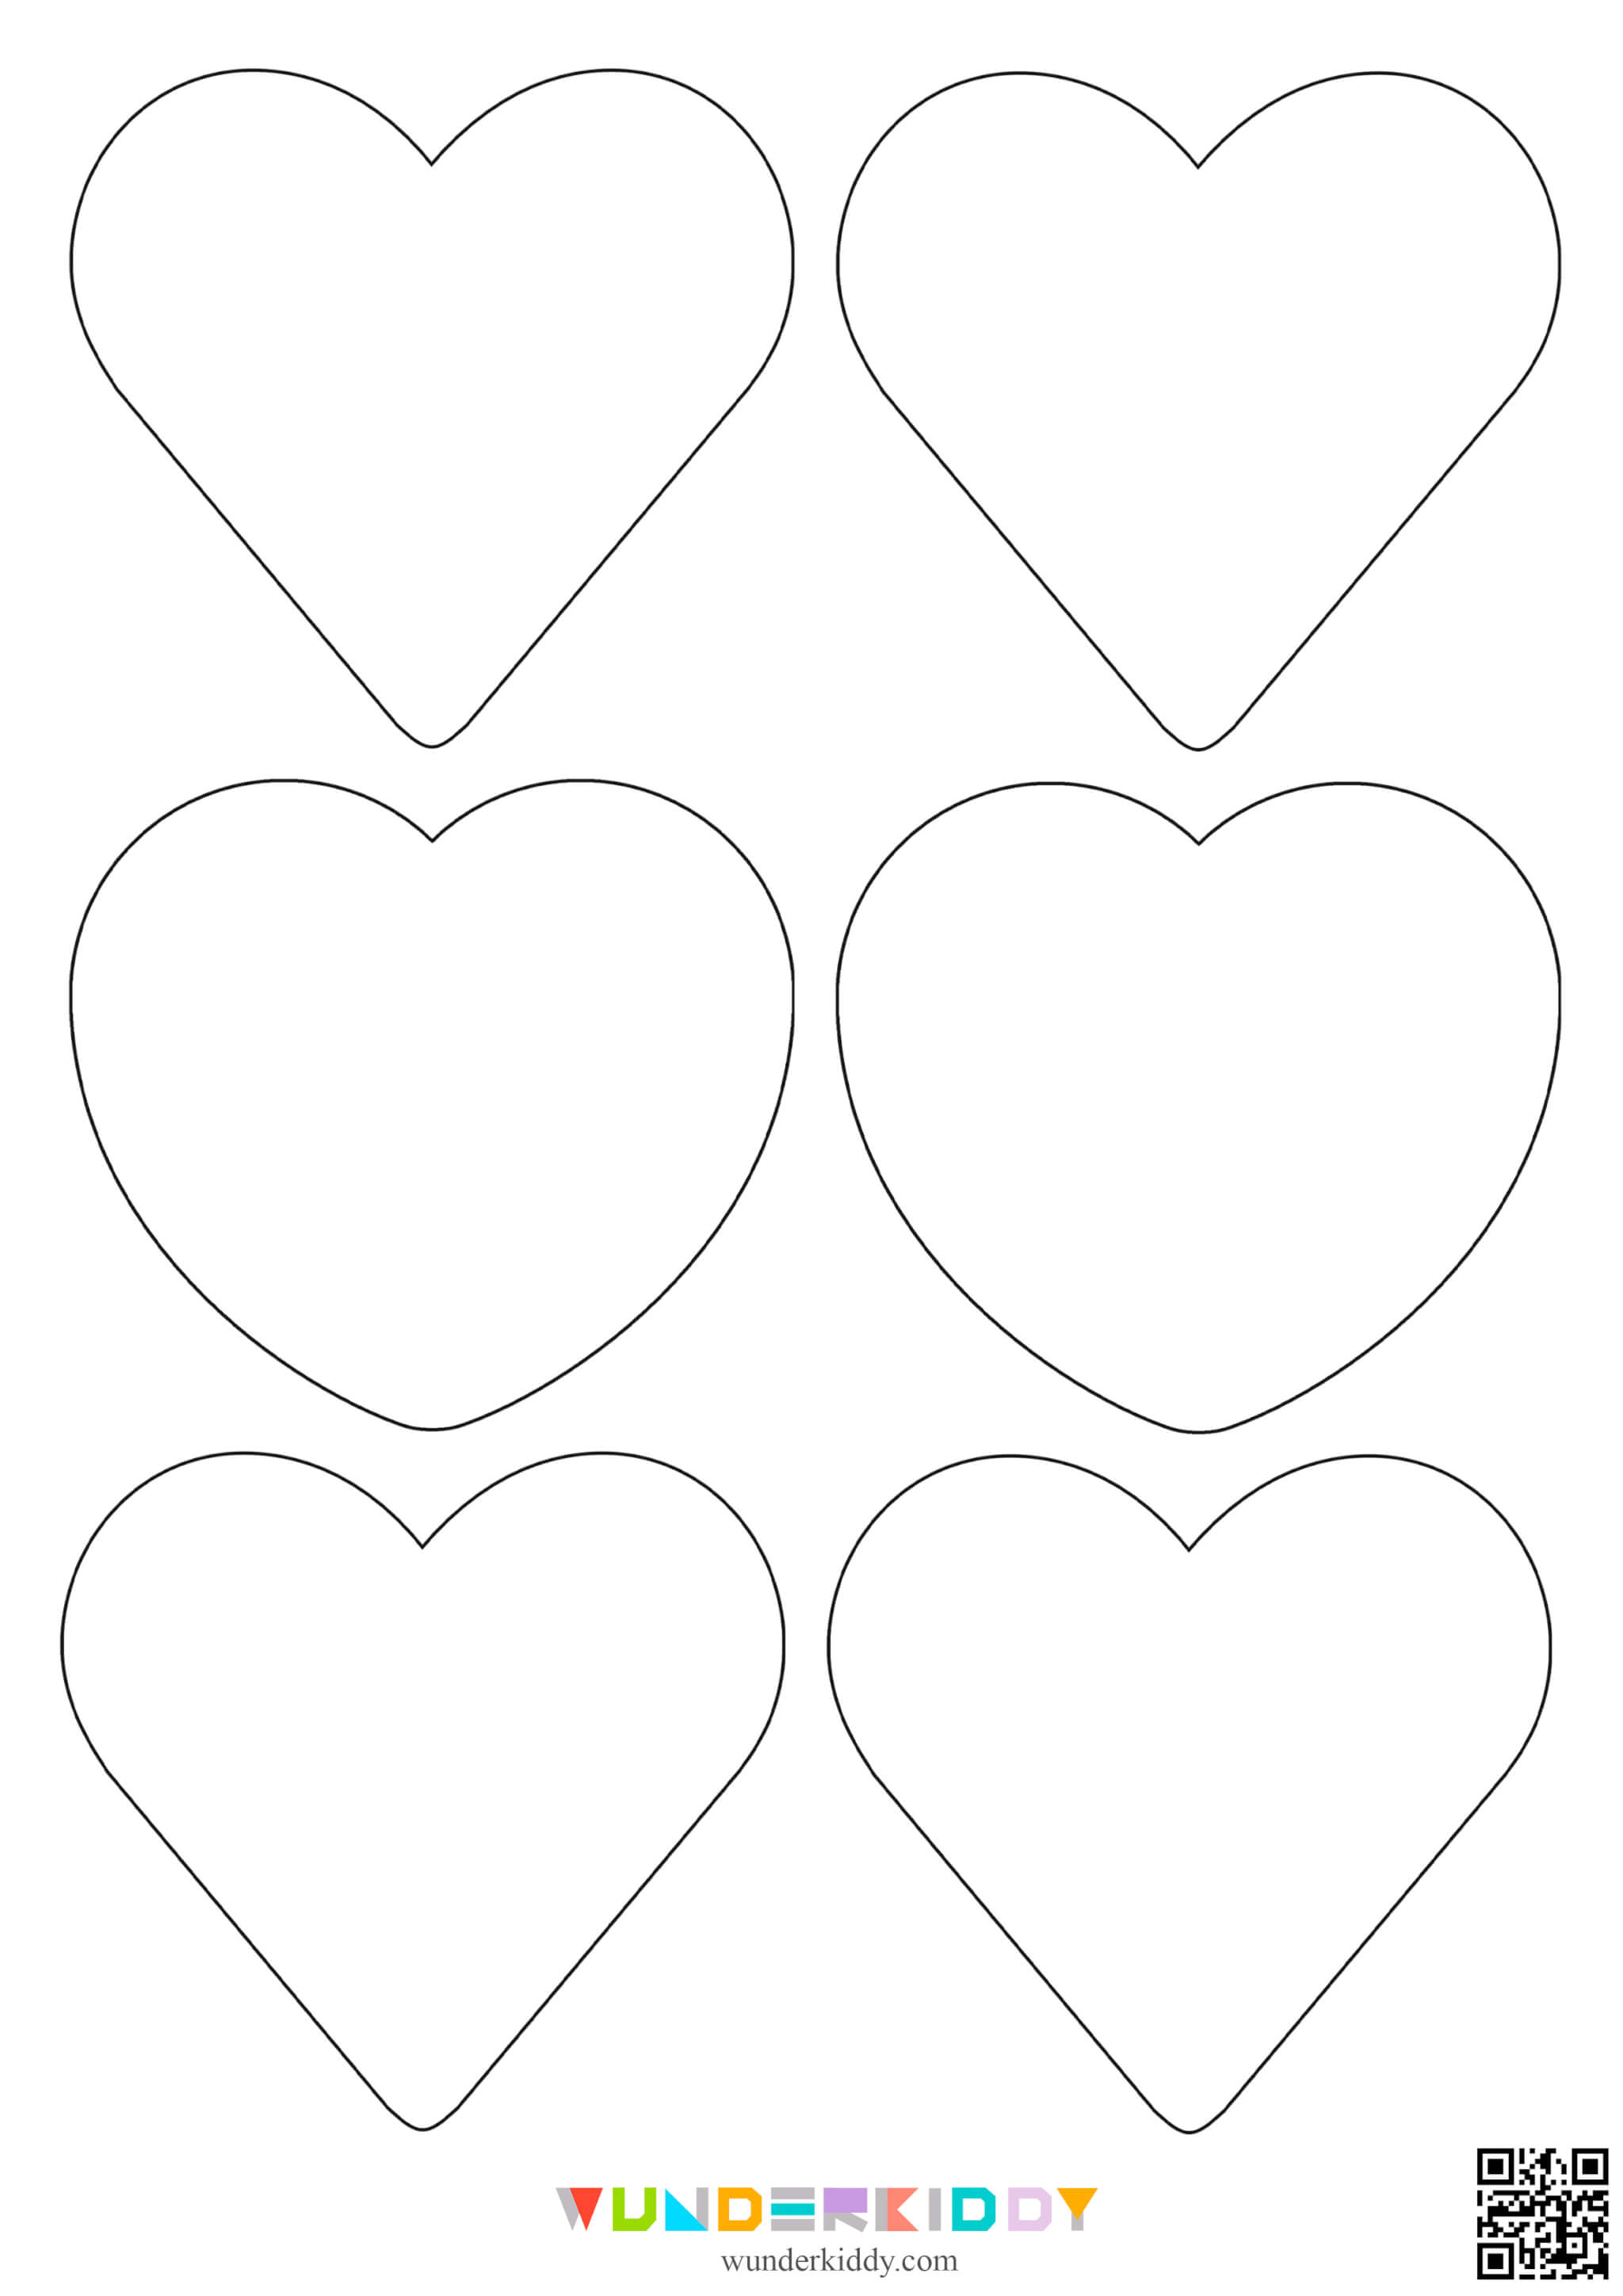 Контури та шаблони «Сердечка» для вирізання - Зображення 3